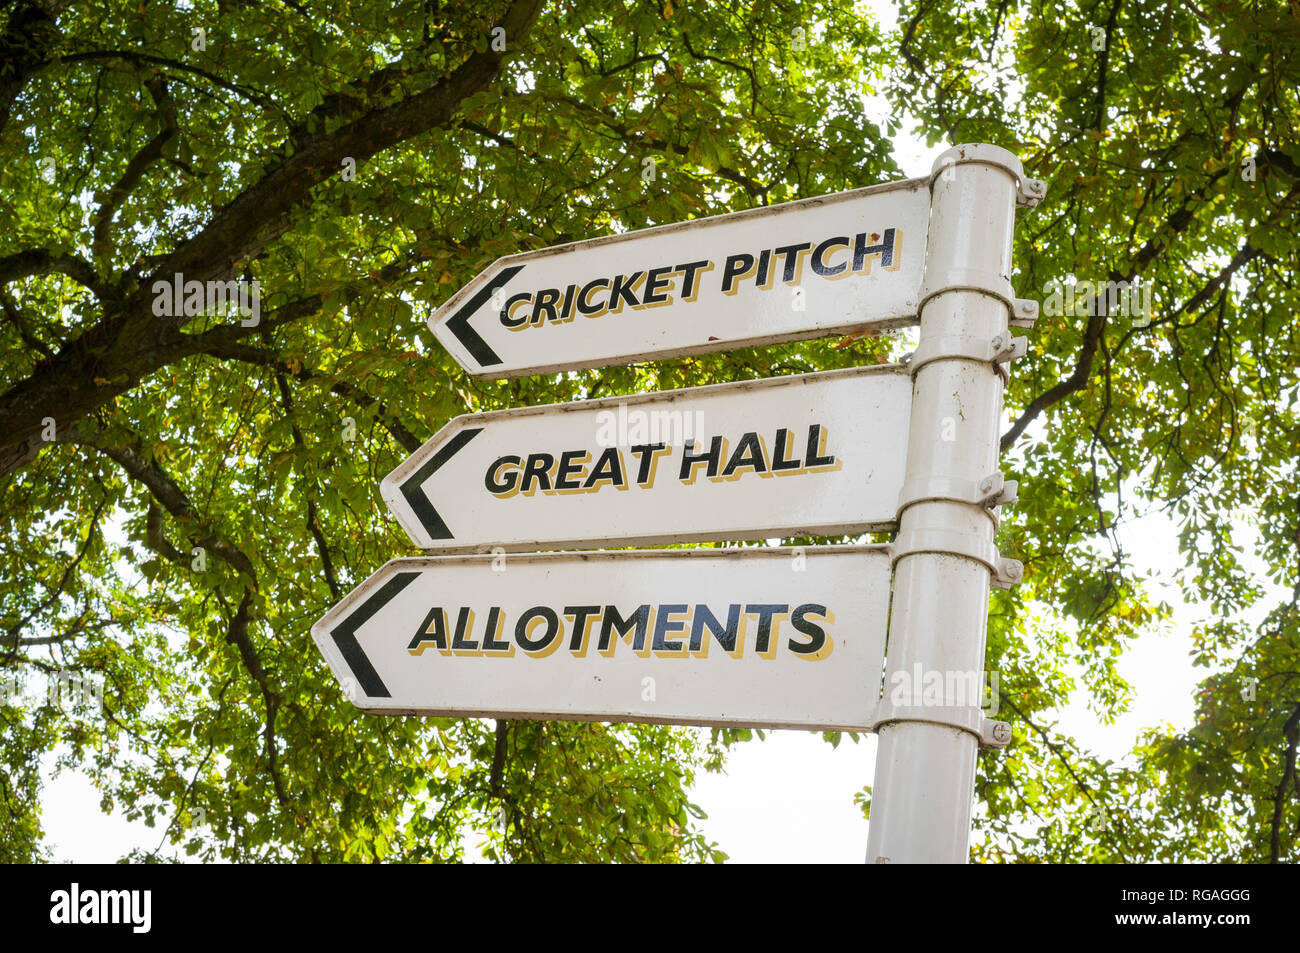 La marque d'une terrain de cricket, la grande salle et les affectations sur l'Fontenoille Meadows development à Fontenoille, Oxfordshire, anciennement l'hôpital juste 1,6 km Banque D'Images